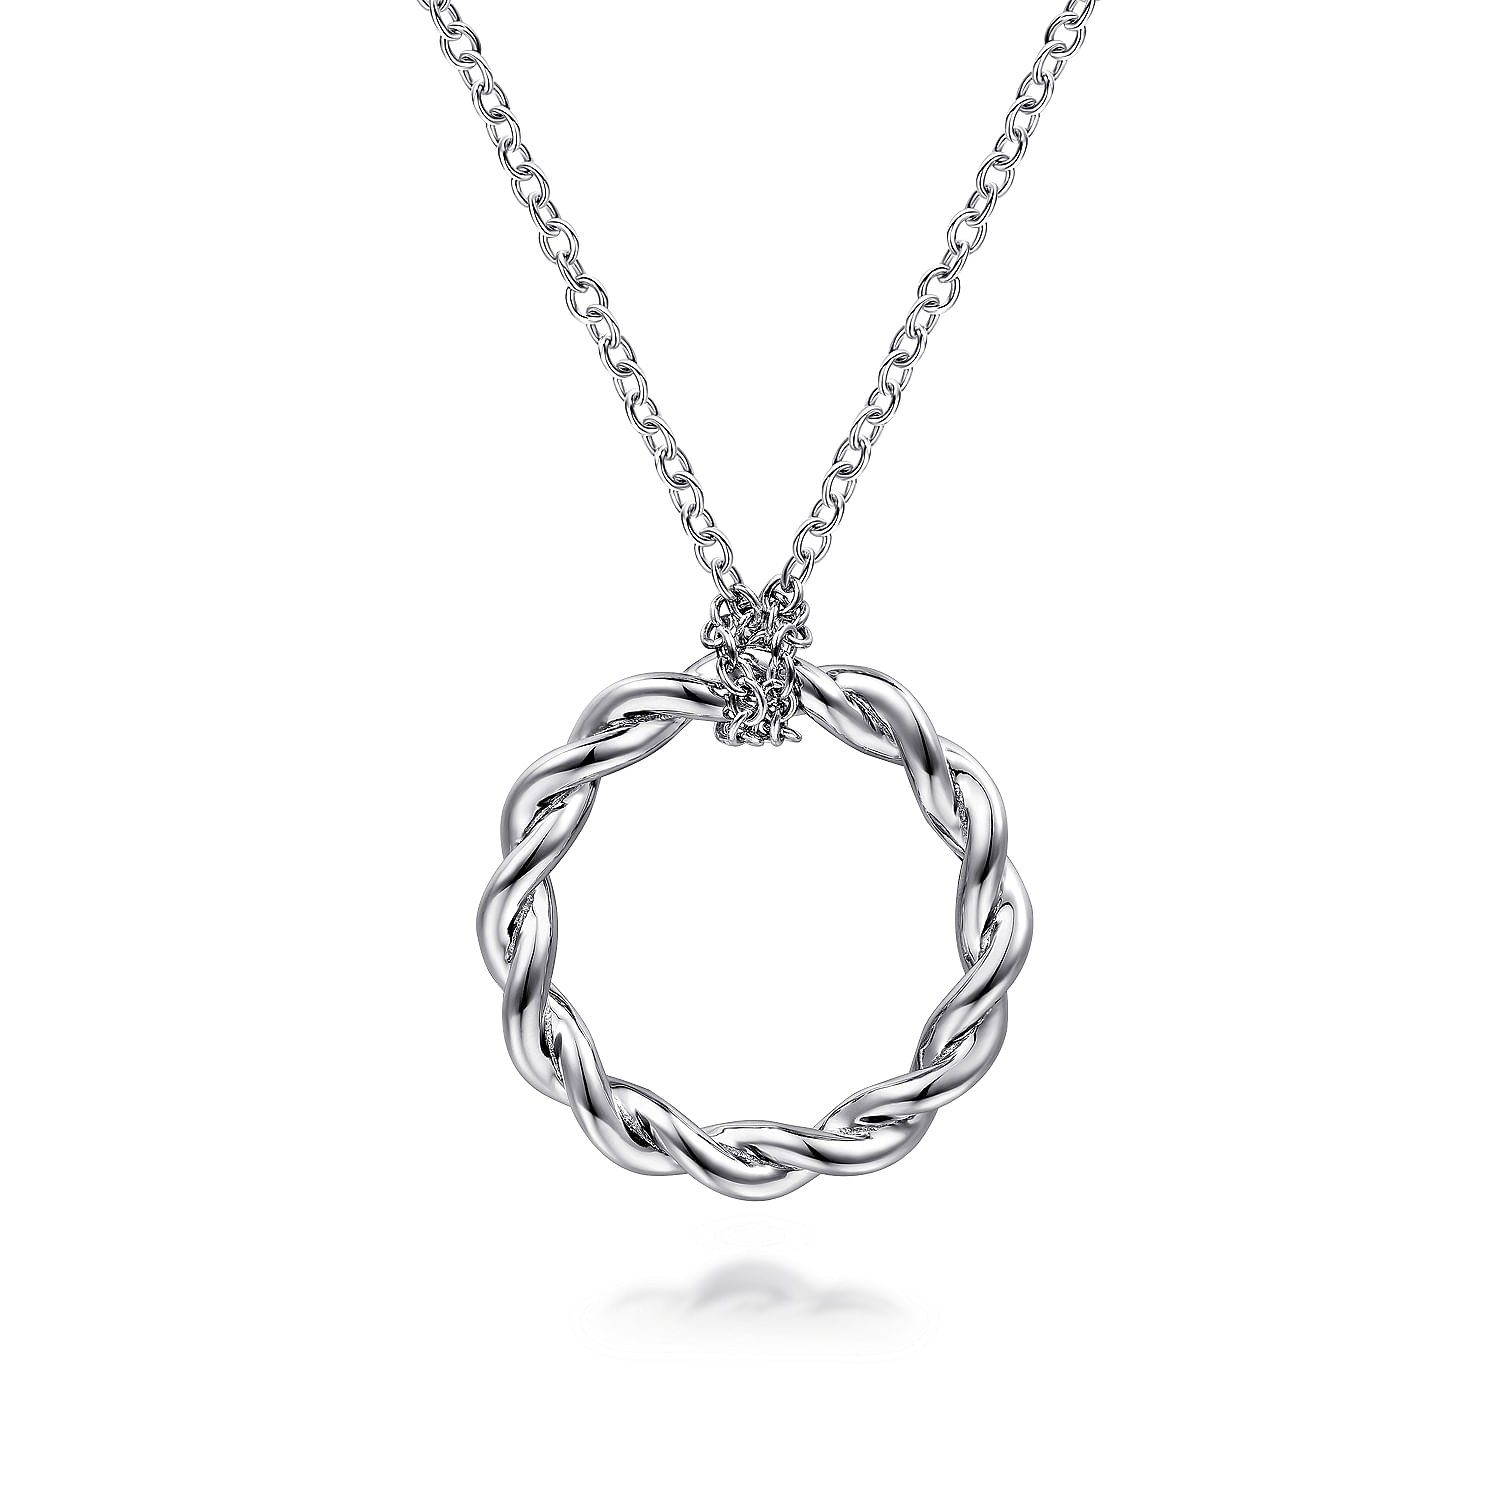 Versace Medusa Pendant Necklace for Women - US Online Store